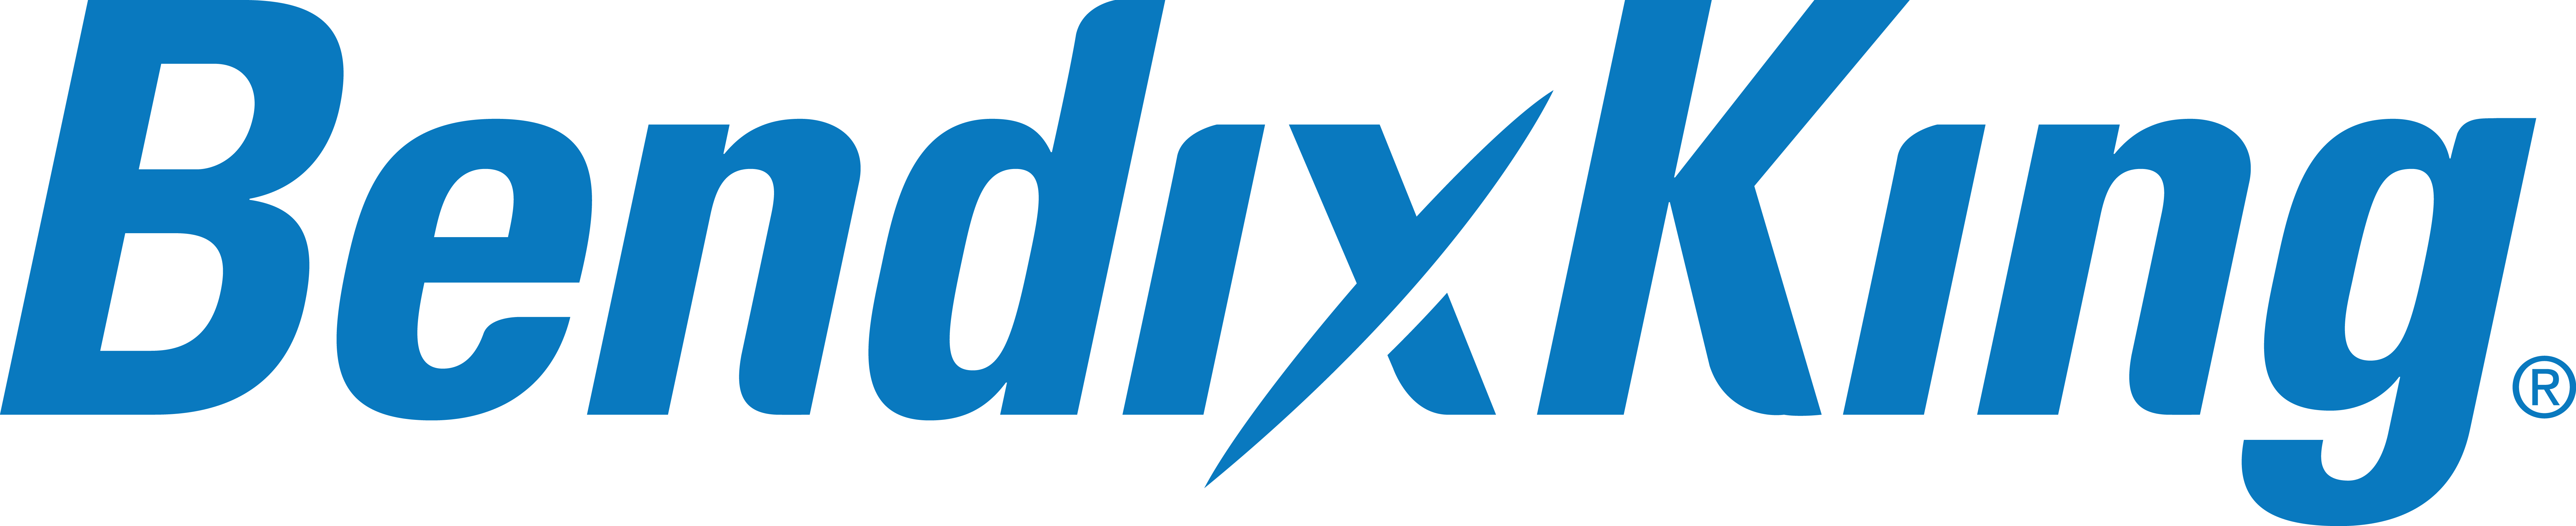 BendixKing-Logo-PMS-300-Large